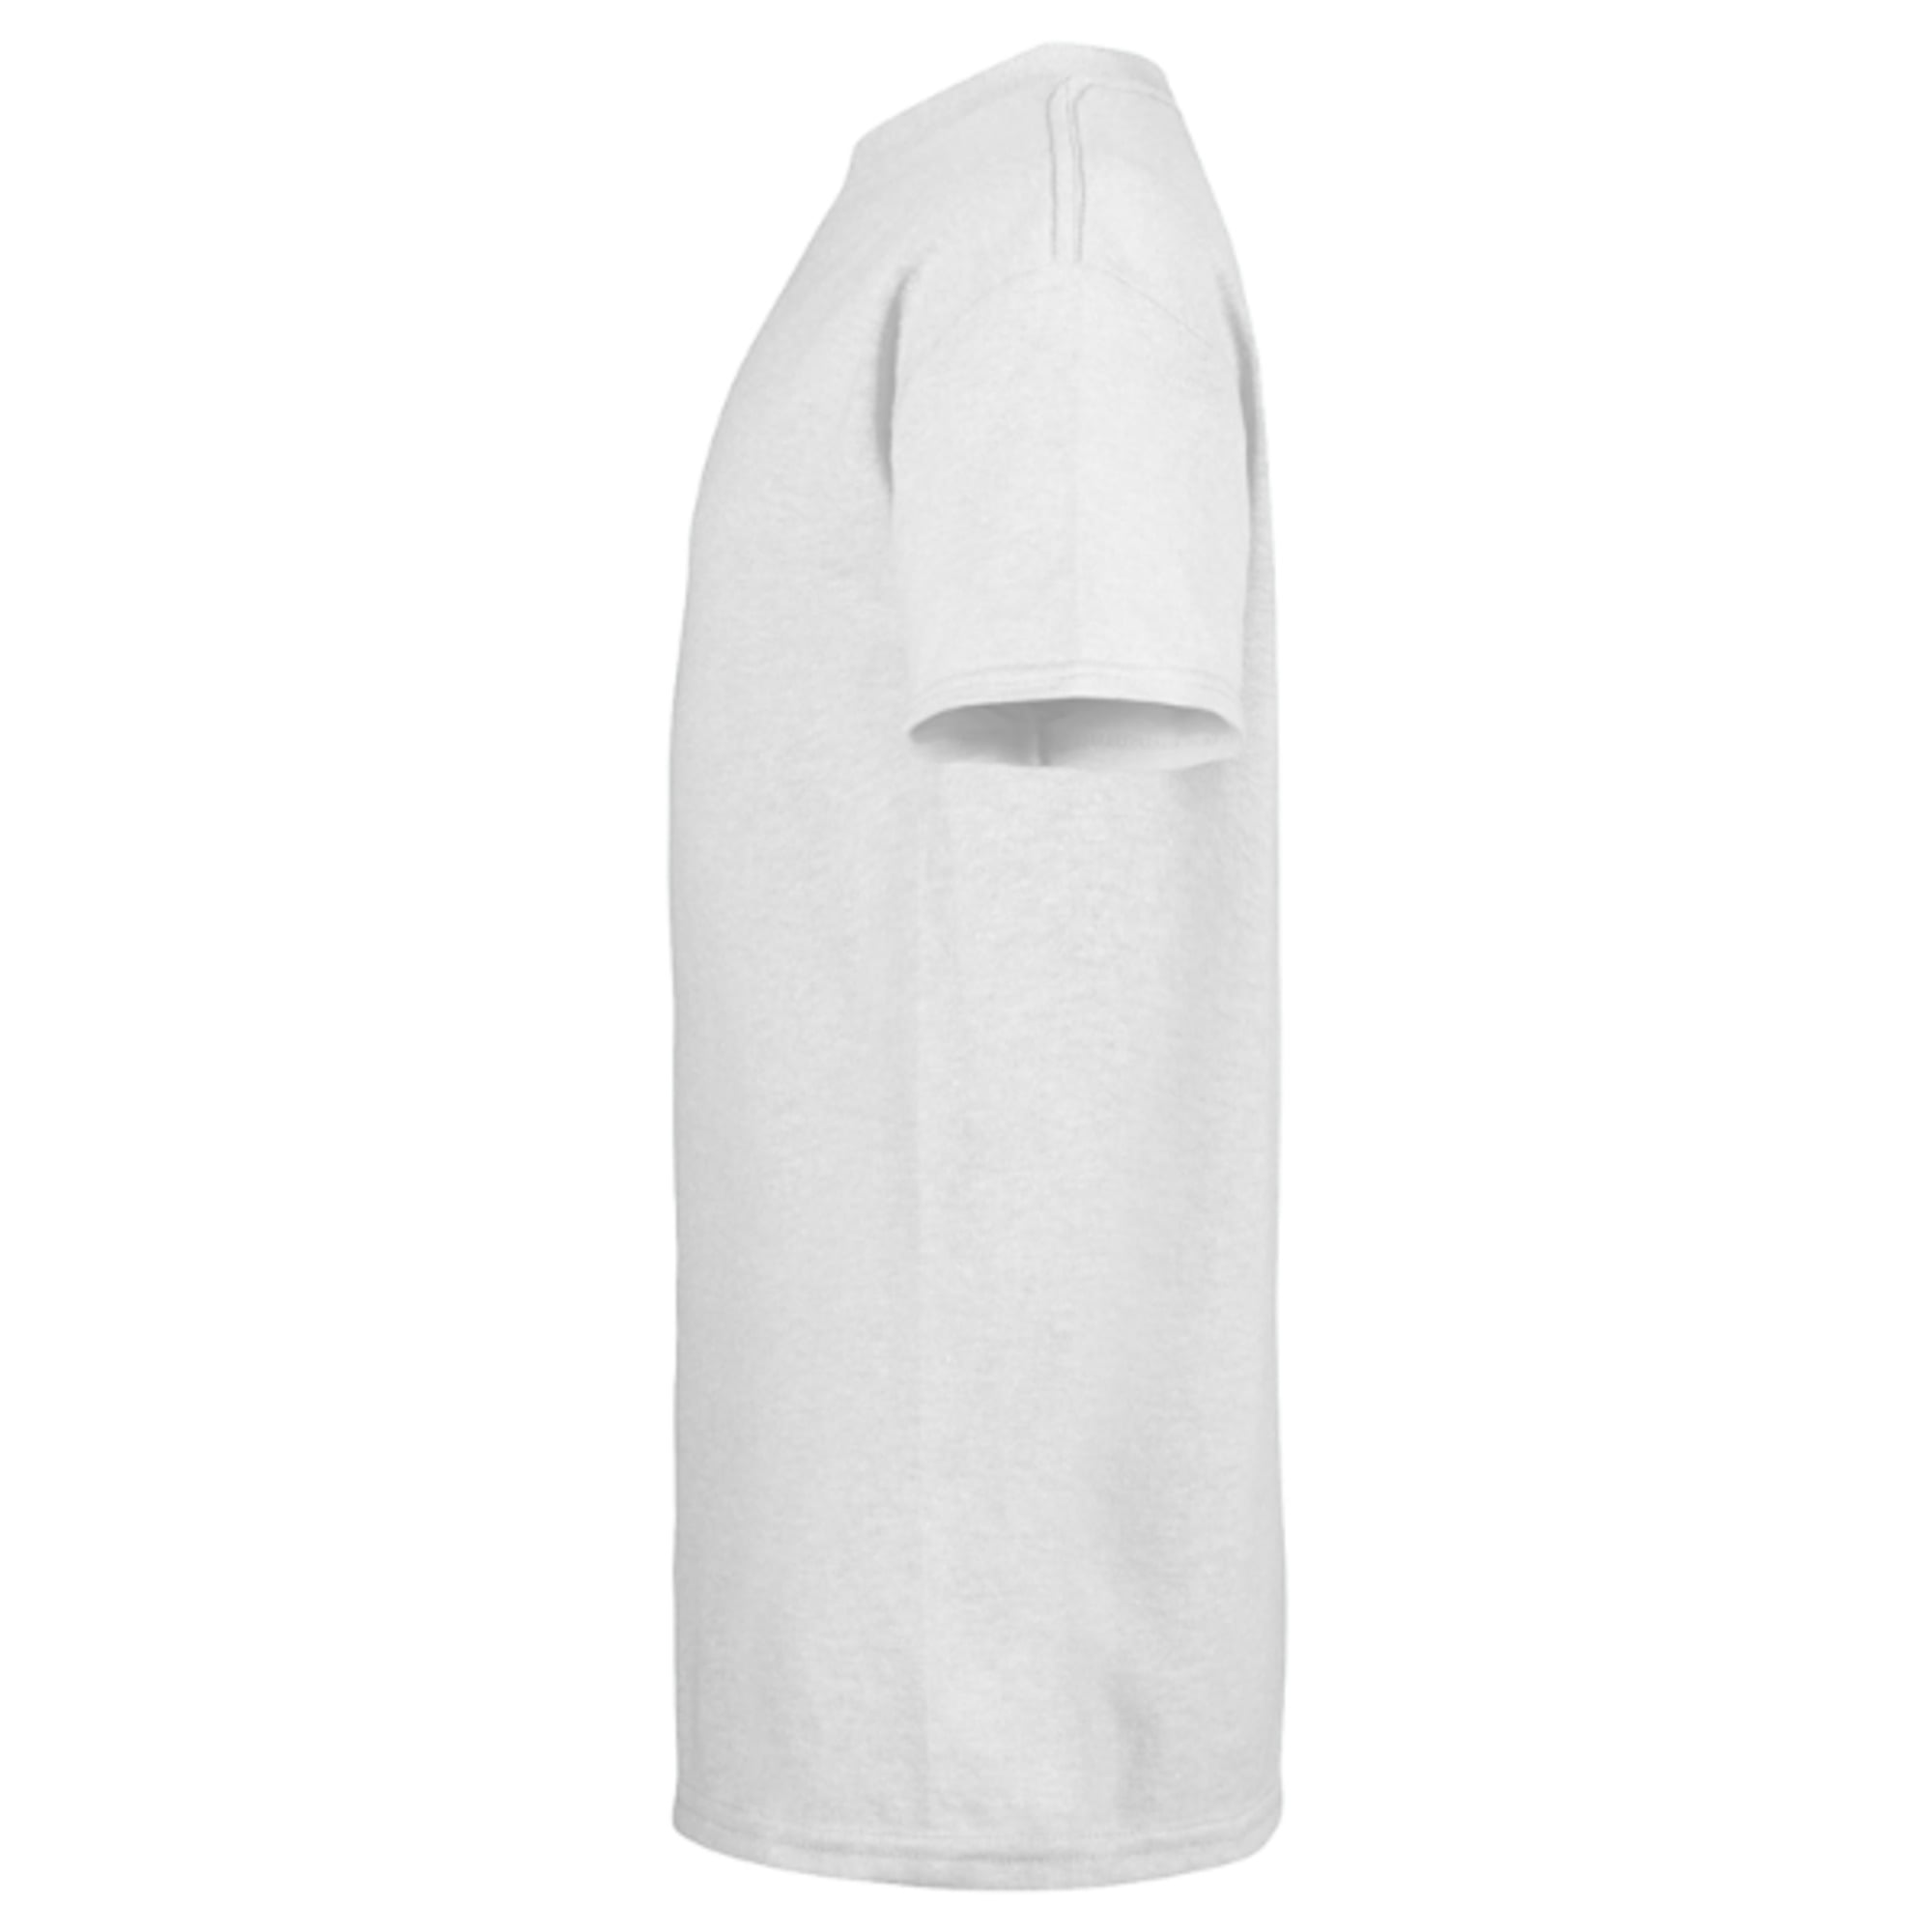 Star Wars Kylo Ren Japanese - Short Sleeve T-Shirt for Kids -  Customized-White